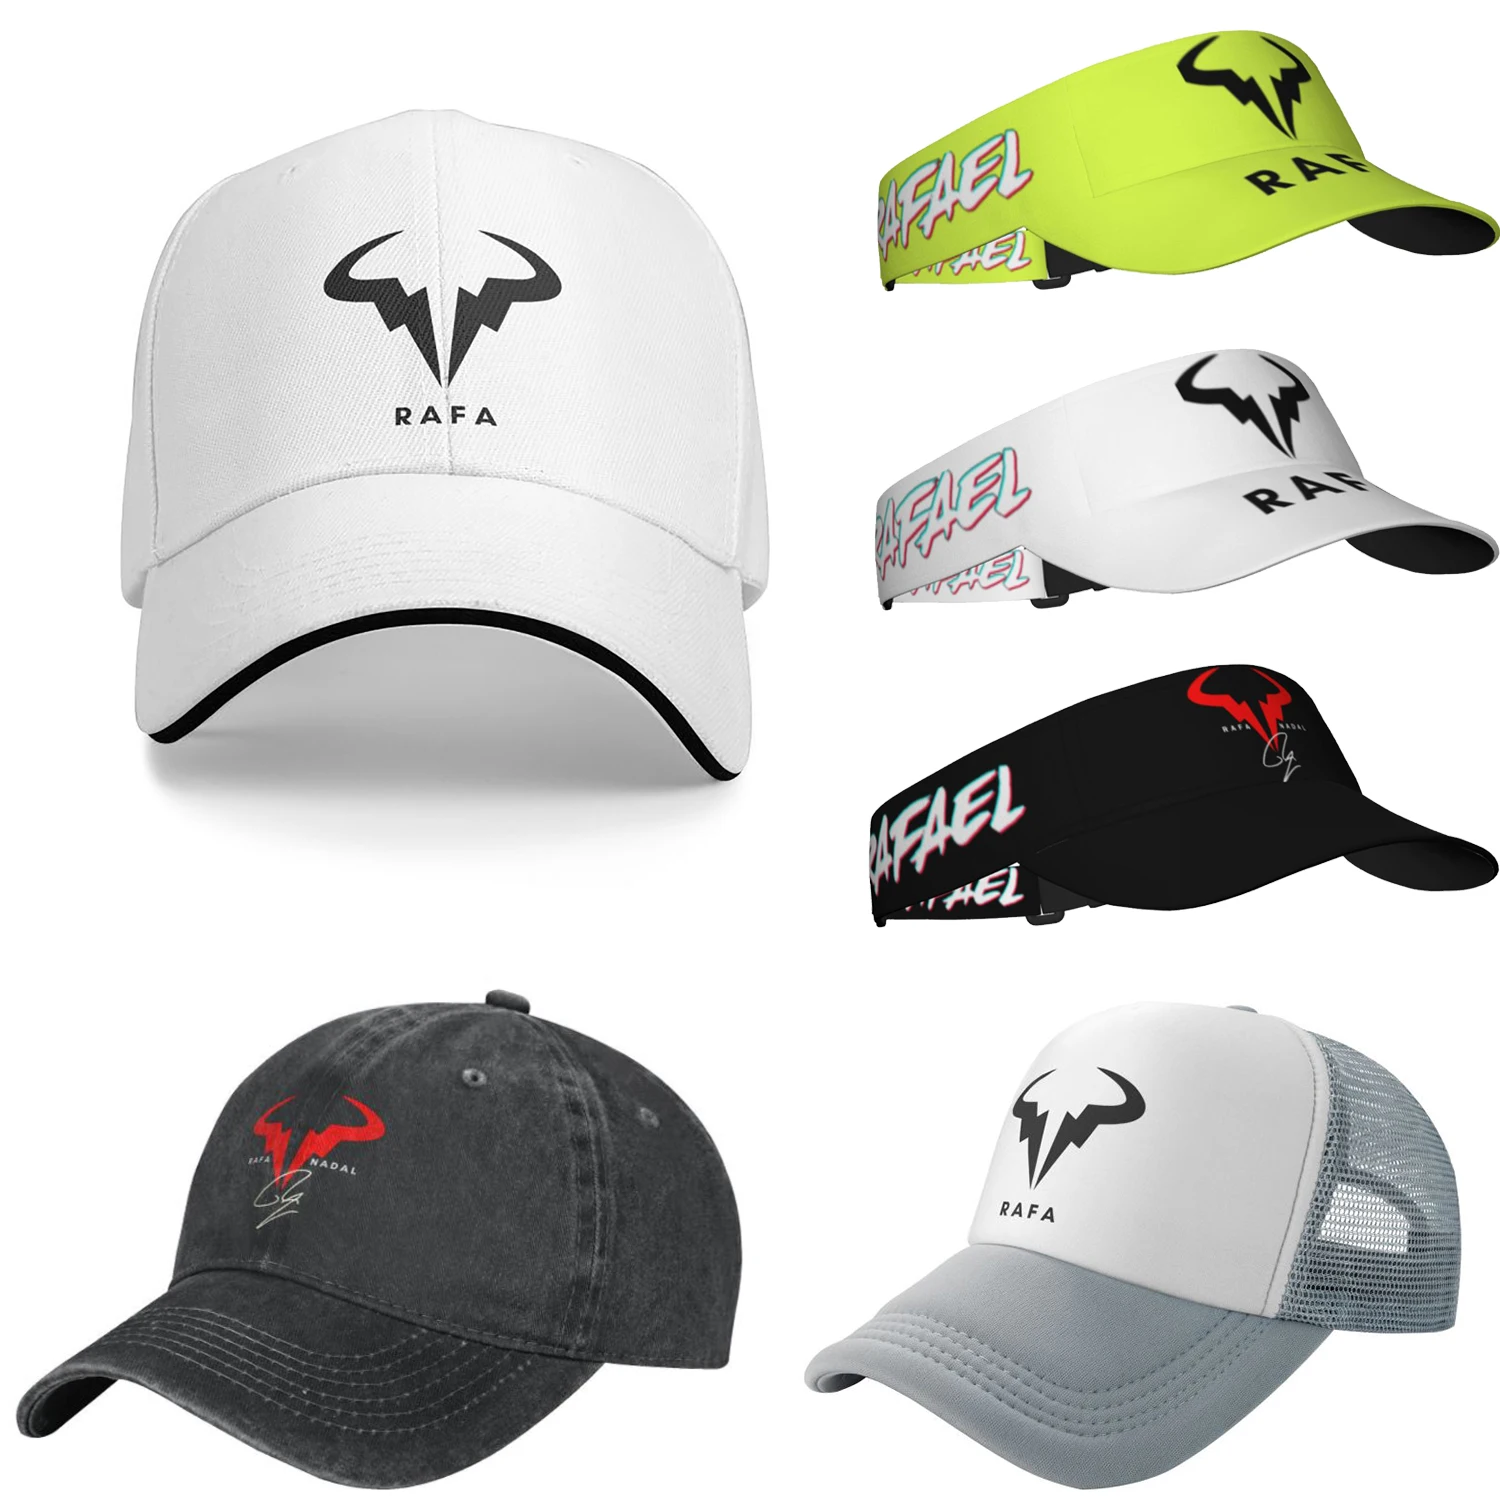 

Best Seller Rafa Nadal Logo Merch Unisex Casquette Caps Hat Unique Design Outdoor Summer Adjustable Fit Sun Cap